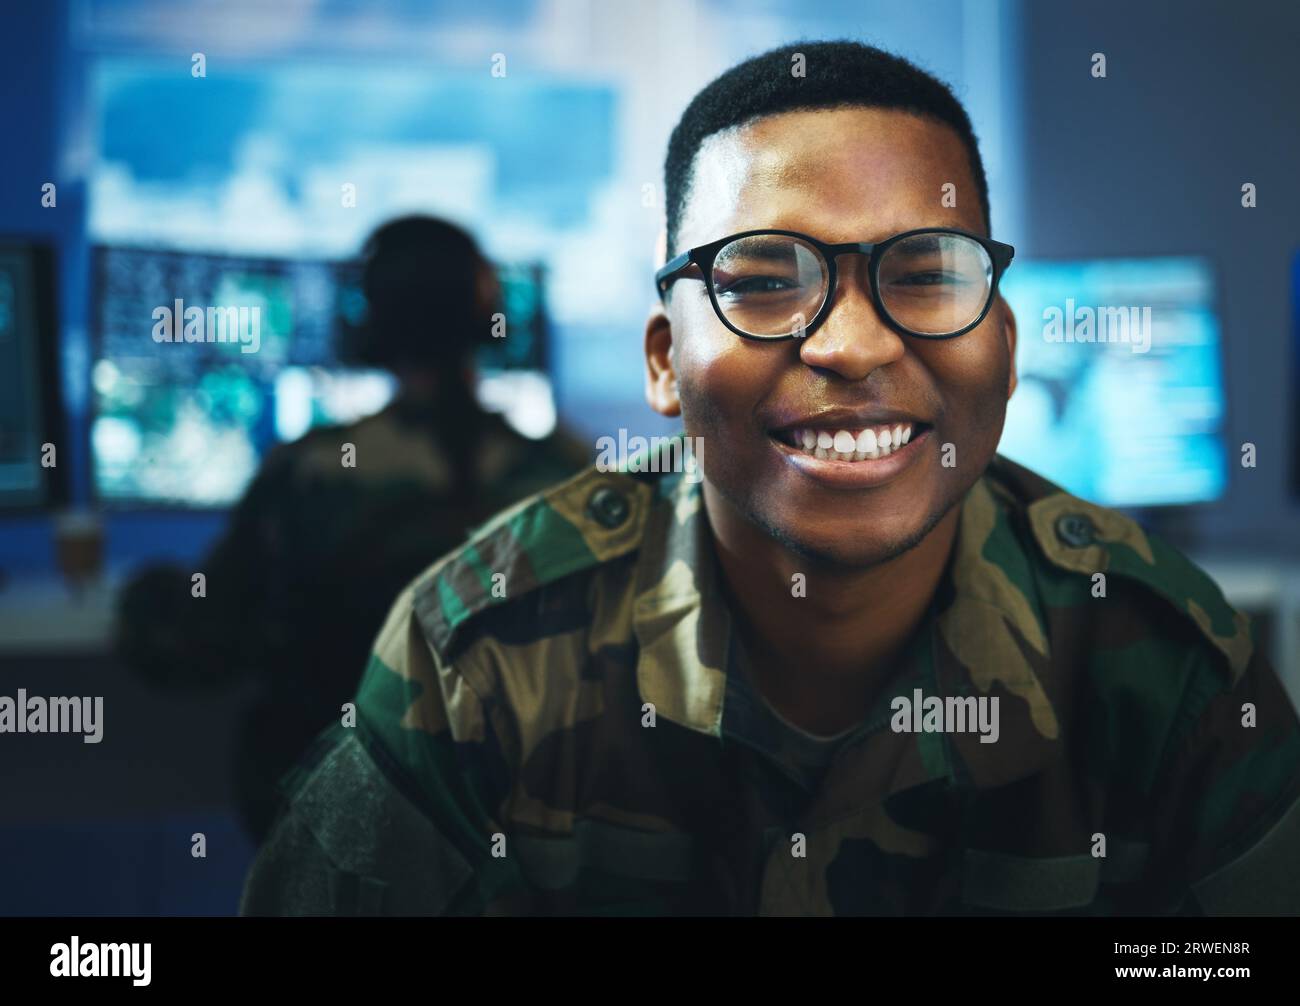 Militär, Überwachung und glückliches Porträt des Menschen in Cybersicherheit, Kontrollraum und Regierungskommunikationsbüro. Armee, Mitarbeiter und Lächeln im Gesicht Stockfoto